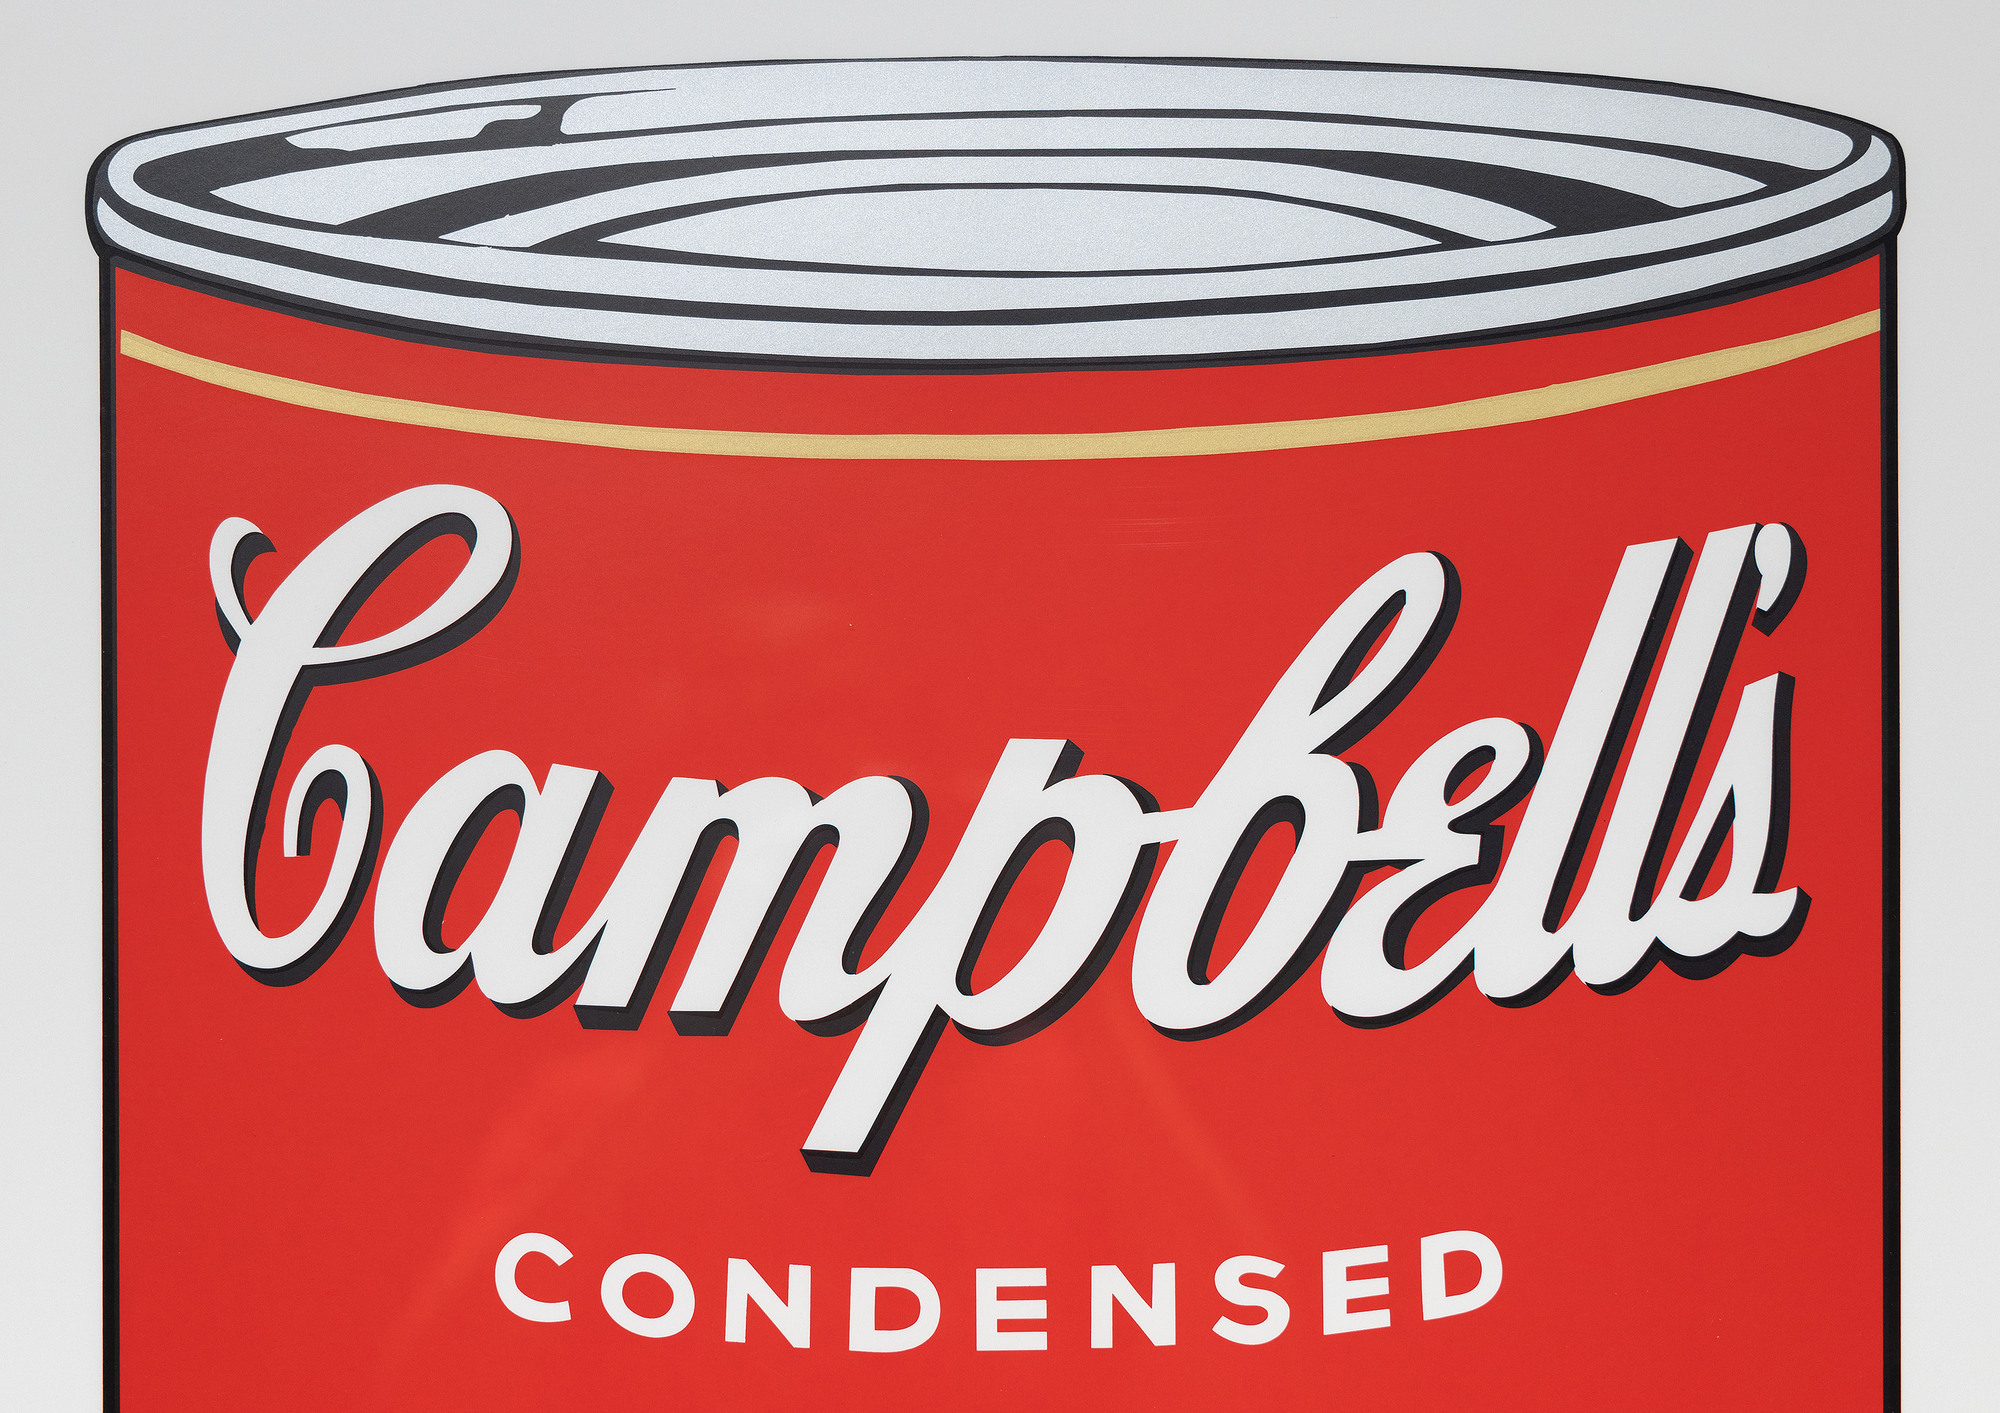 Andy Warhols Campbell&#039;s Soup Cans Serie markiert einen entscheidenden Moment in seiner Karriere und der Pop Art Bewegung. Die Serie, bestehend aus 32 Leinwänden, die jeweils eine andere Geschmacksrichtung zeigen, revolutionierte die Kunstwelt, indem sie alltägliche Konsumgüter in den Status der hohen Kunst erhob. Der Siebdruck Pepper Pot aus dem Jahr 1968 zeigt den für ihn typischen Stil mit leuchtenden, flachen Farben und sich wiederholenden Bildern, die für die Massenproduktion und die Konsumkultur charakteristisch sind. Der Siebdruck, eine kommerzielle Technik, passt zu Warhols Interesse, die Grenzen zwischen hoher Kunst und kommerzieller Kunst zu verwischen und künstlerische Werte und Wahrnehmungen in Frage zu stellen.